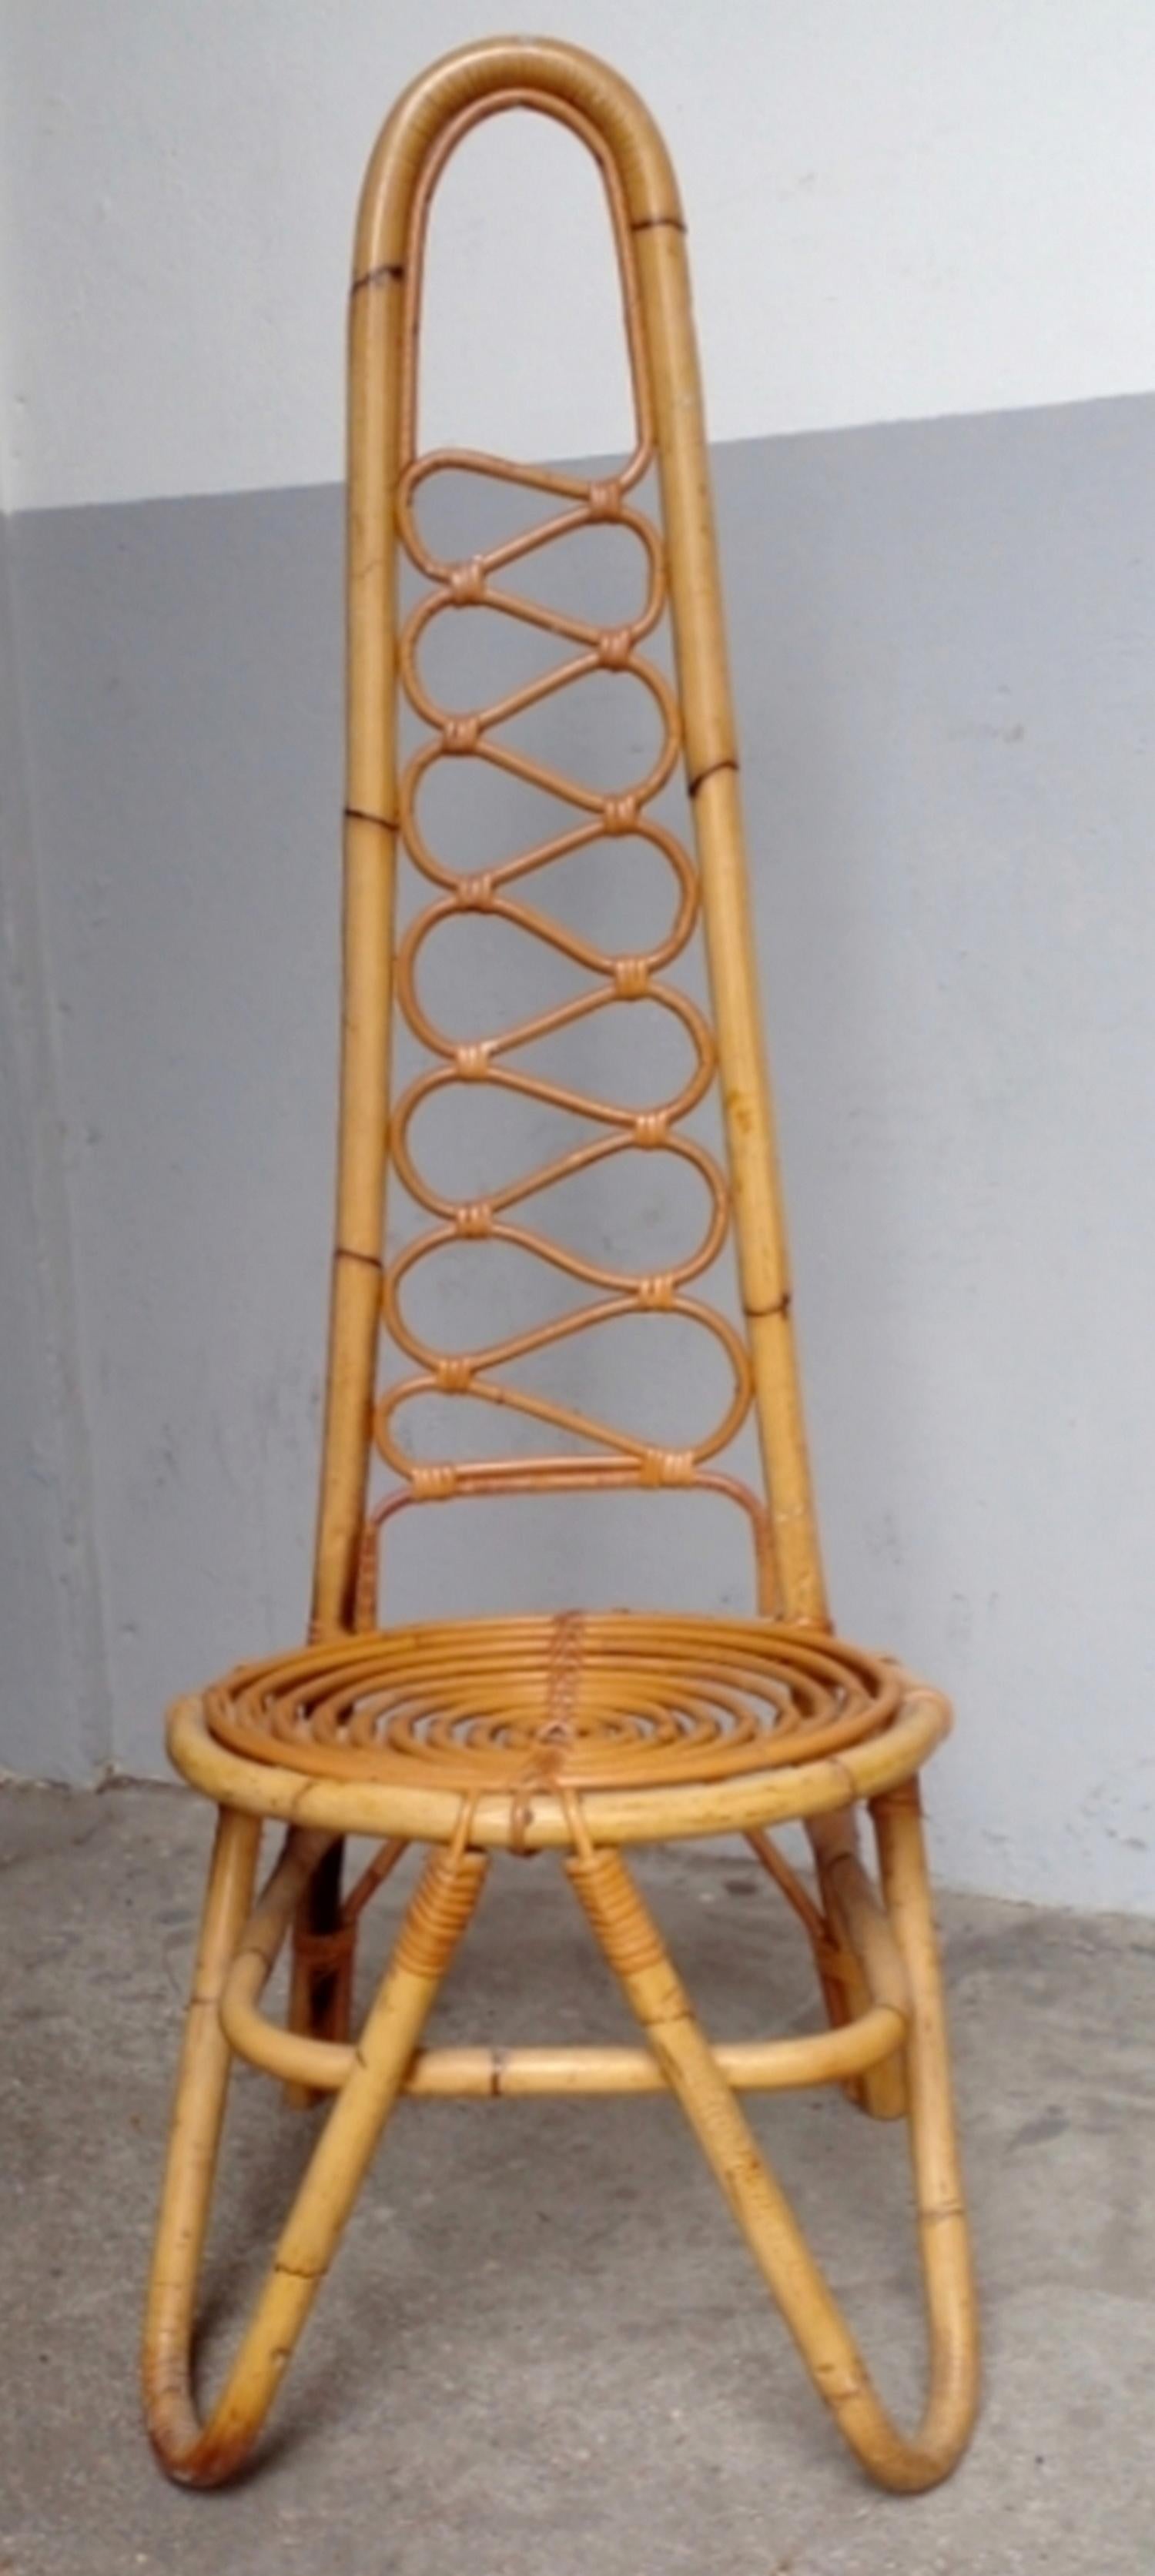 Six chaises à dossier haut en rotin et bambou, fabriquées par Bonacina en Italie vers 1960.
En parfait état.

Giovanni Bonacina a commencé son activité en 1889 à Lurago d'Erba, au nord de Milan, en combinant deux métiers traditionnels, la